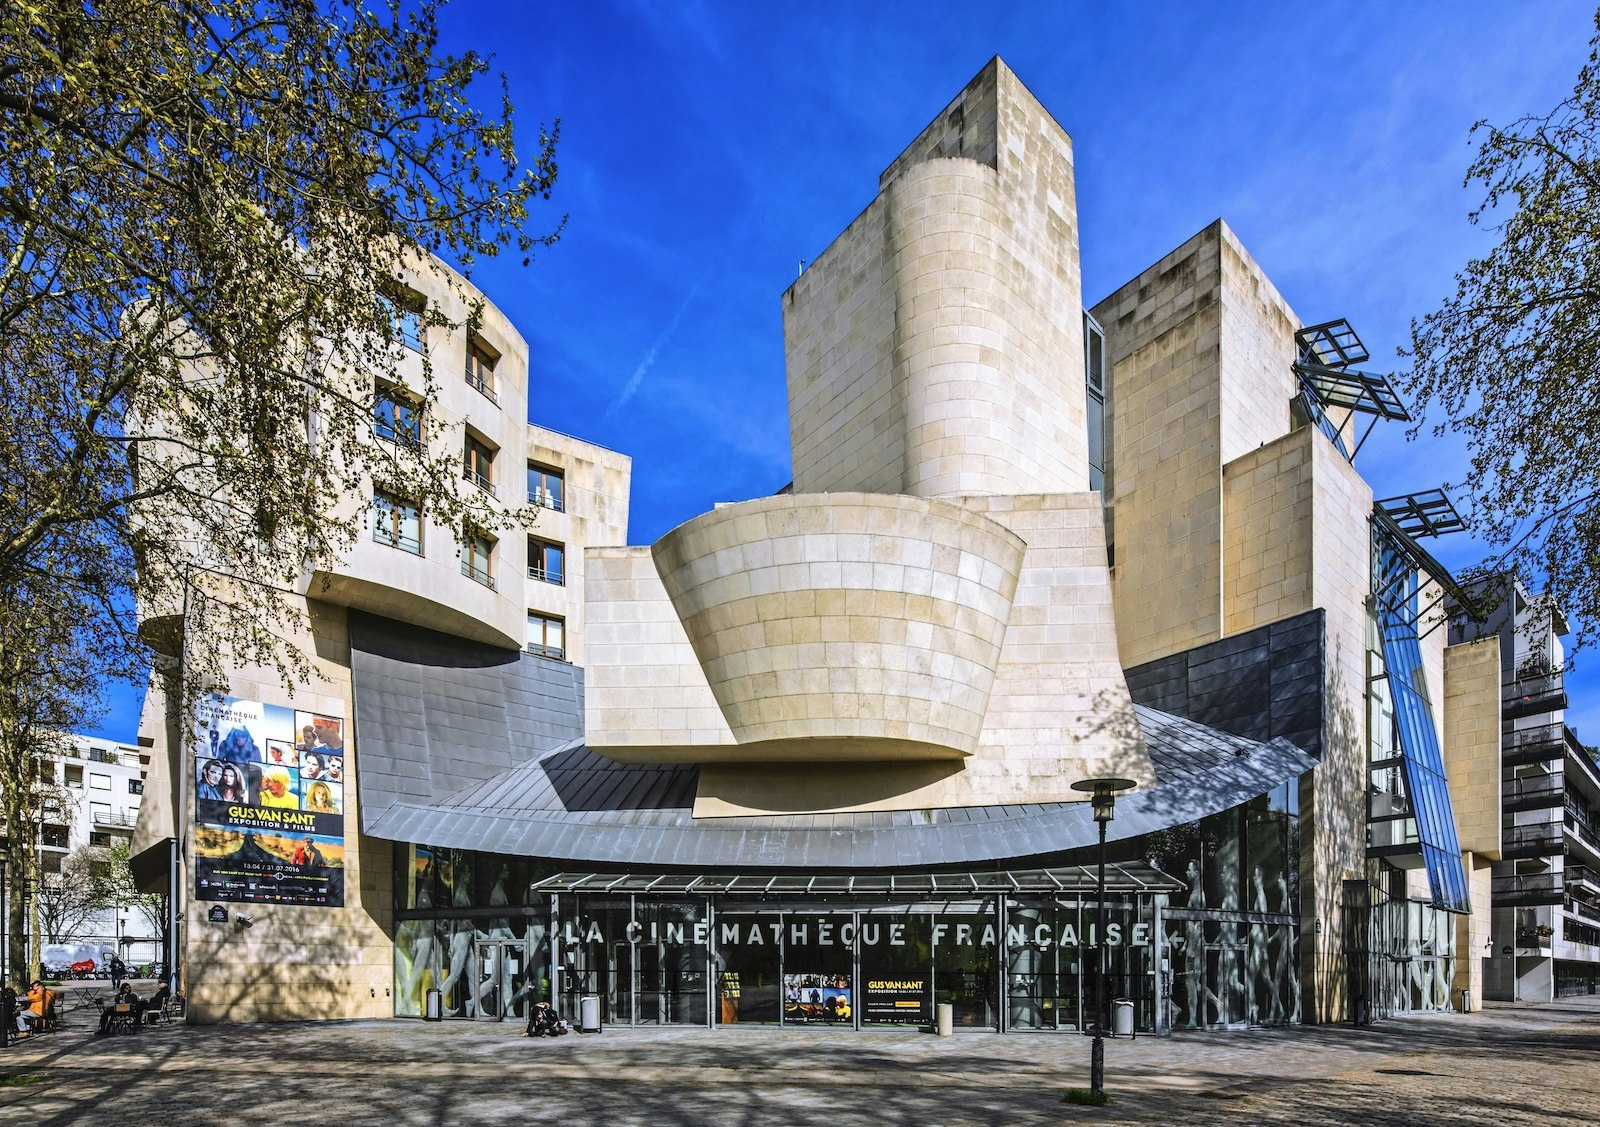 La Cinémathèque Française in Paris, a uniquely shaped building framing a blue sky background